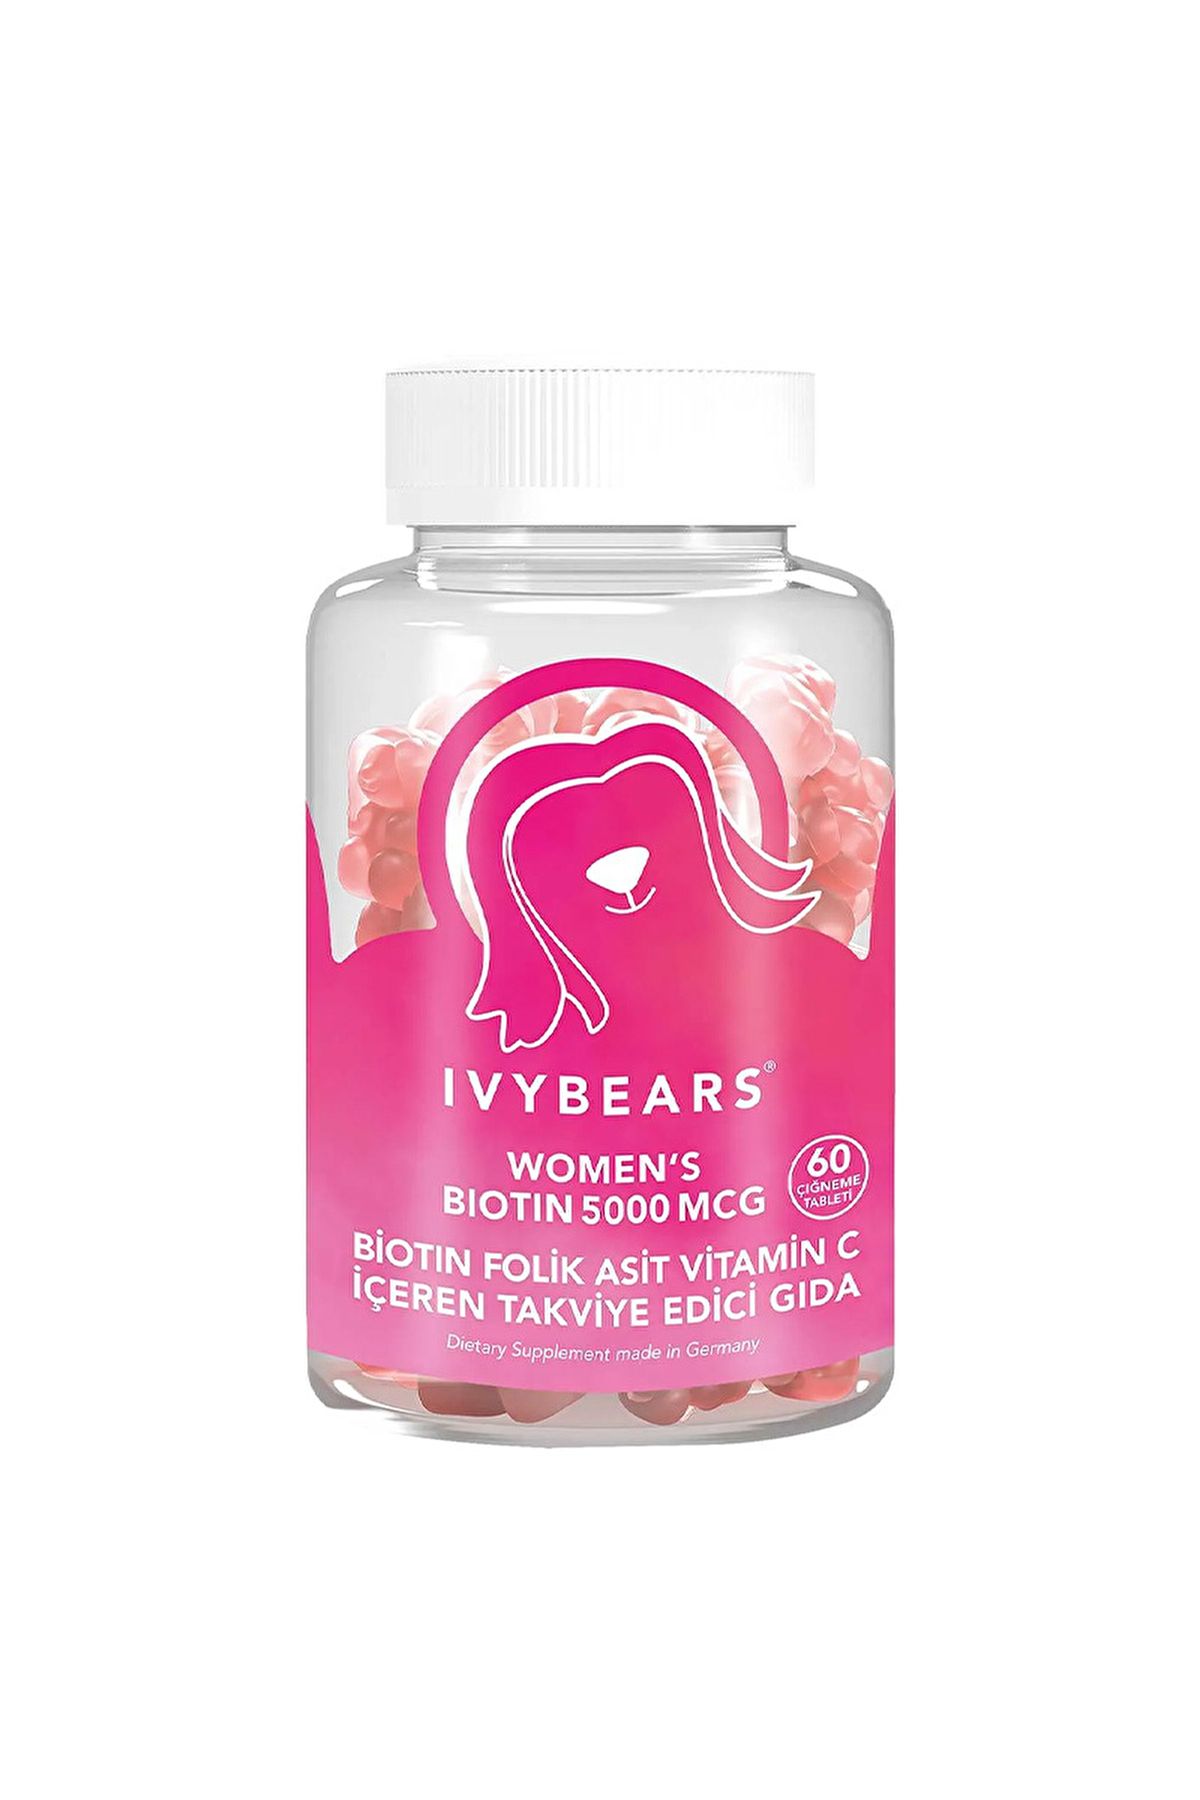 IvyBears Women's Biotin 5000 Mcg 60 Çiğnenebilir Form